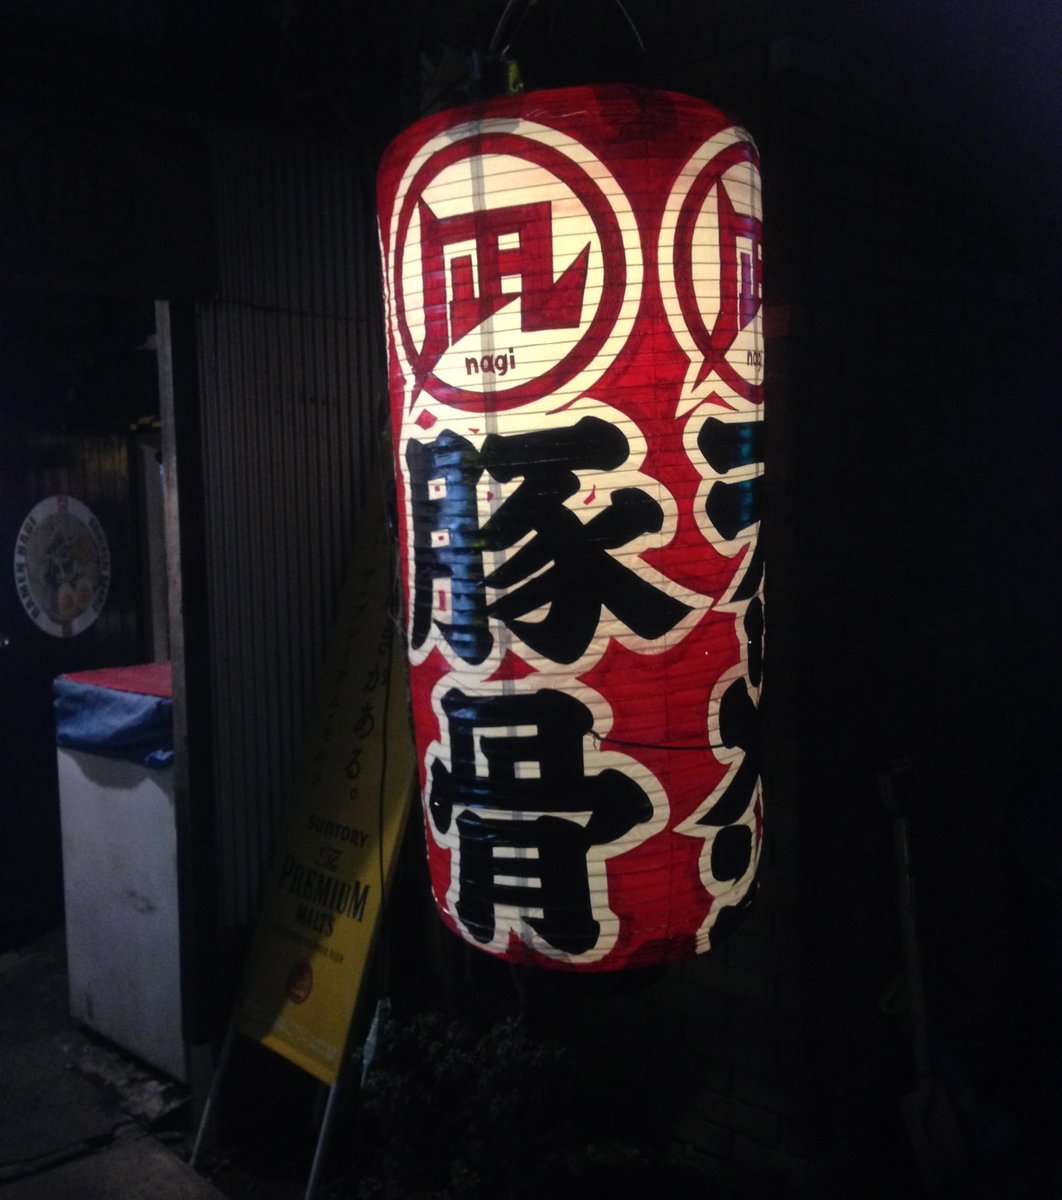 ラーメン凪 豚王 渋谷本店